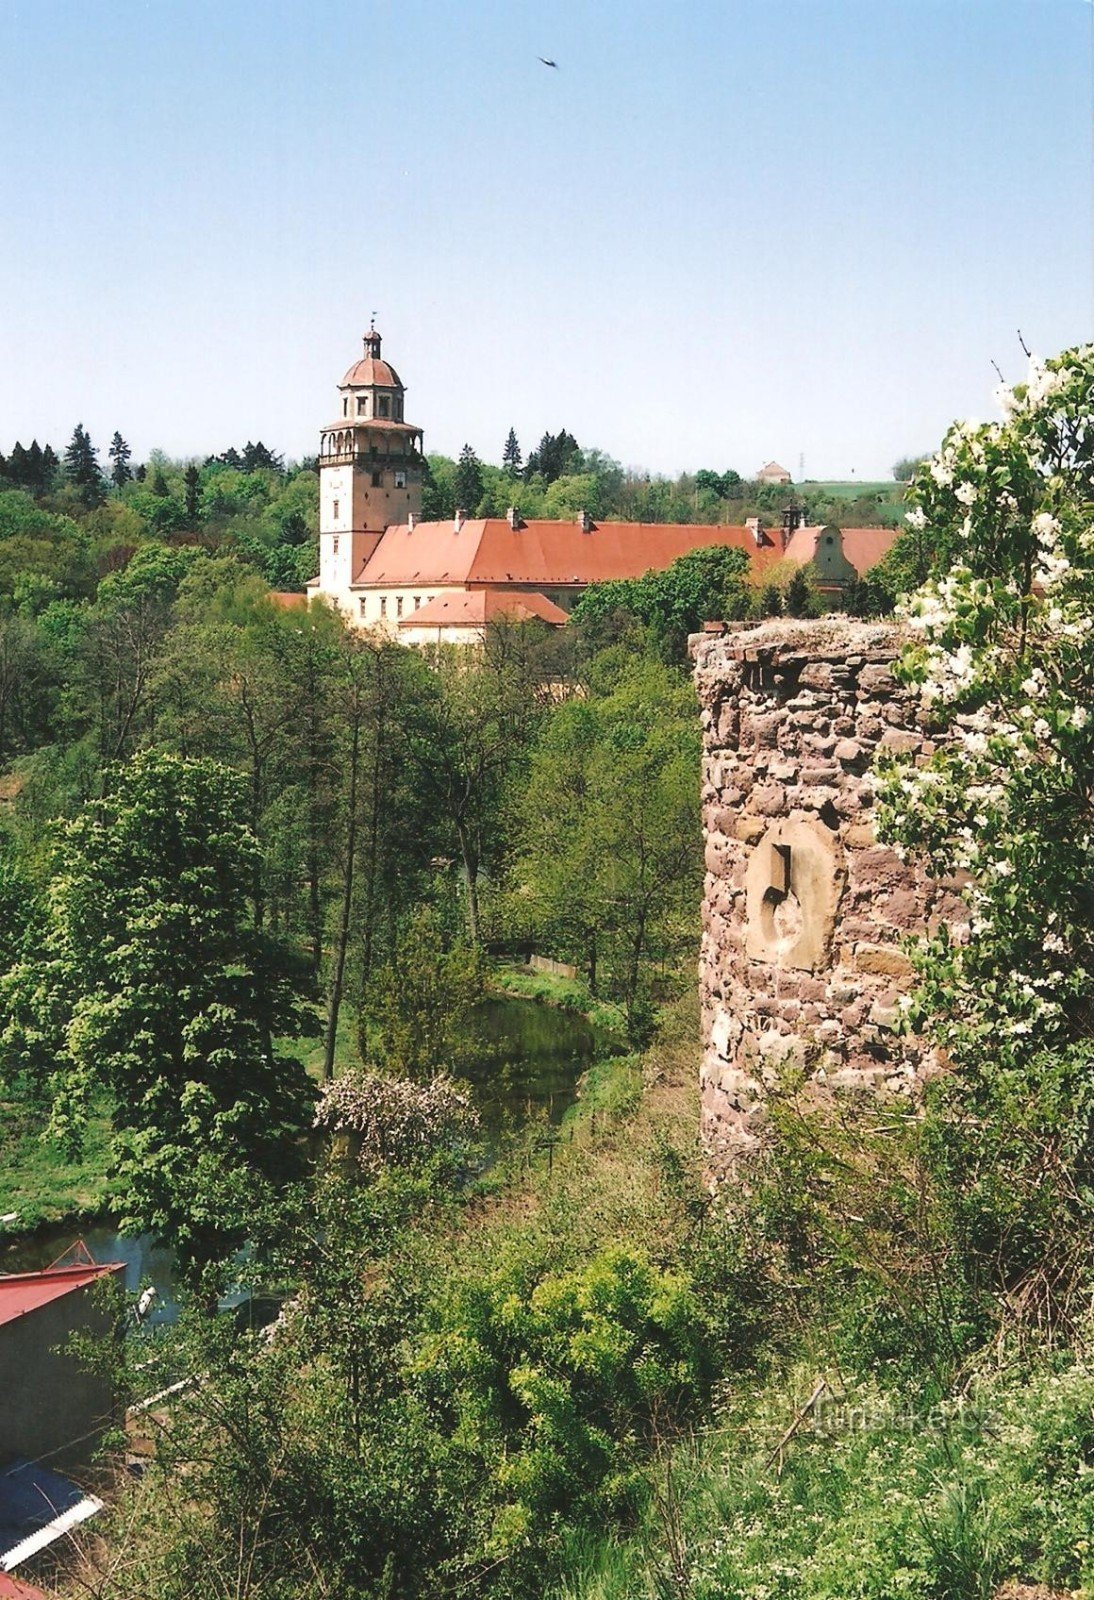 Moravský Krumlov - walls